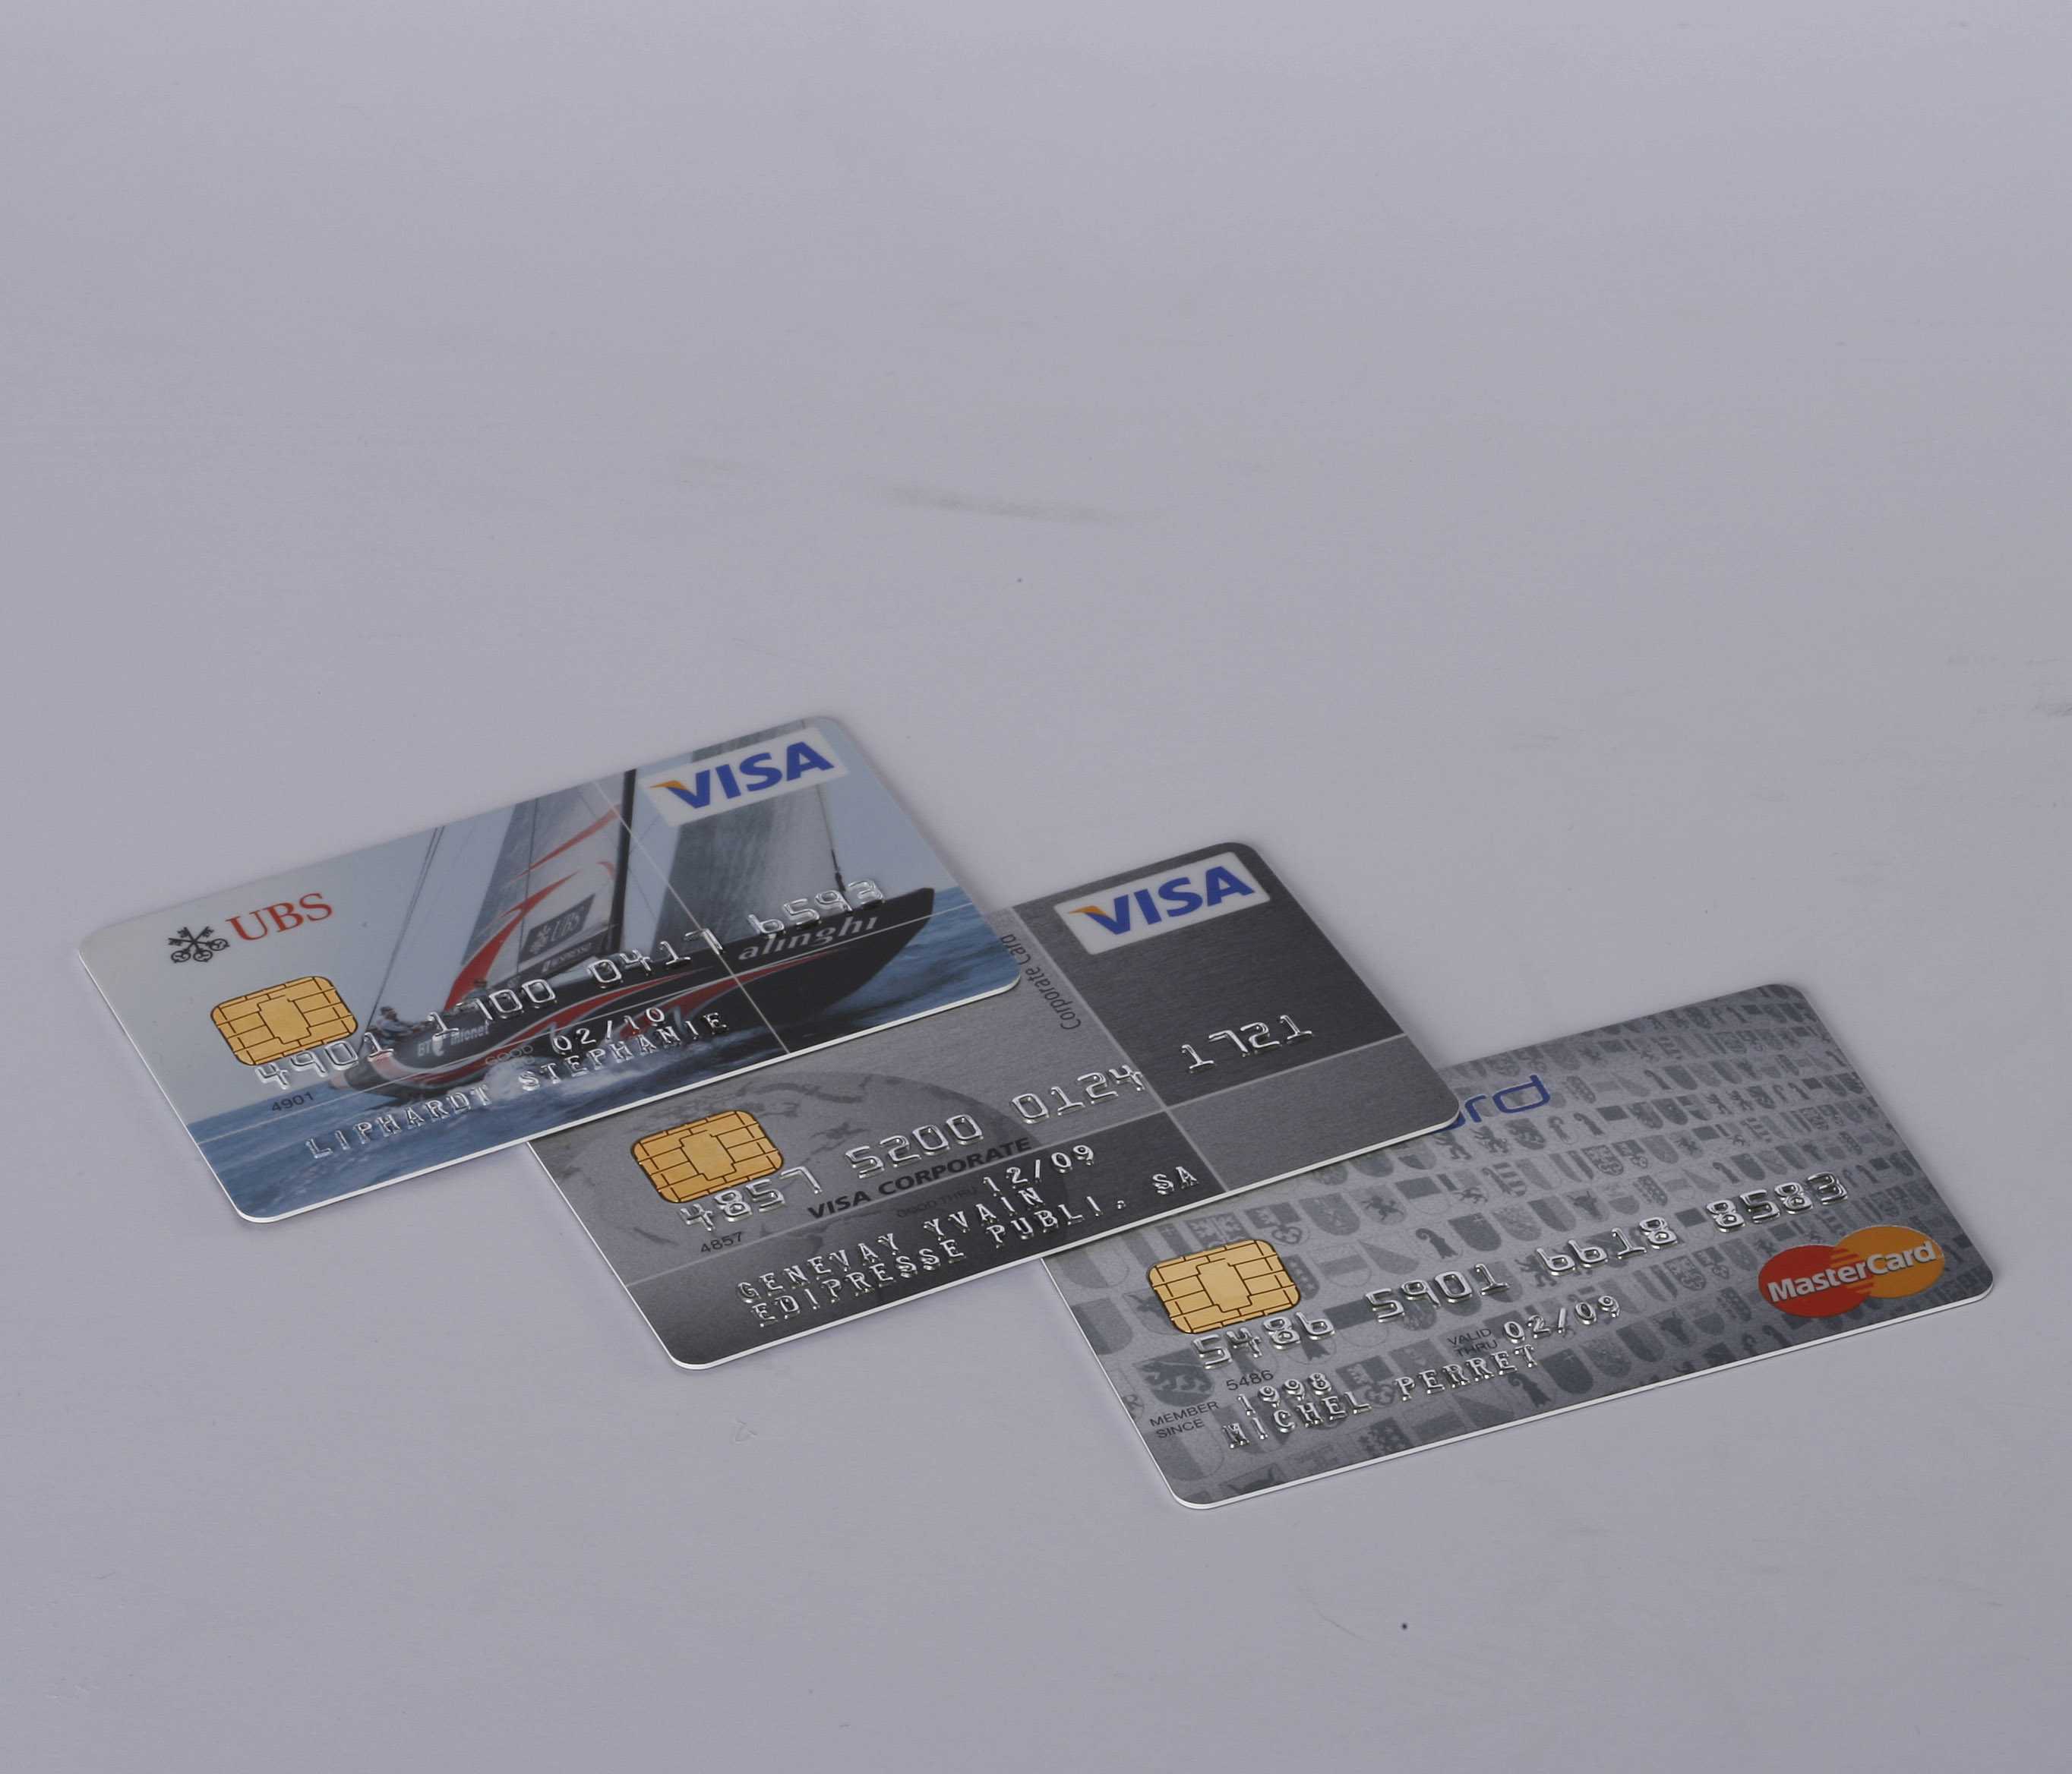 Rust desk мошенничество с банковскими картами фото 92